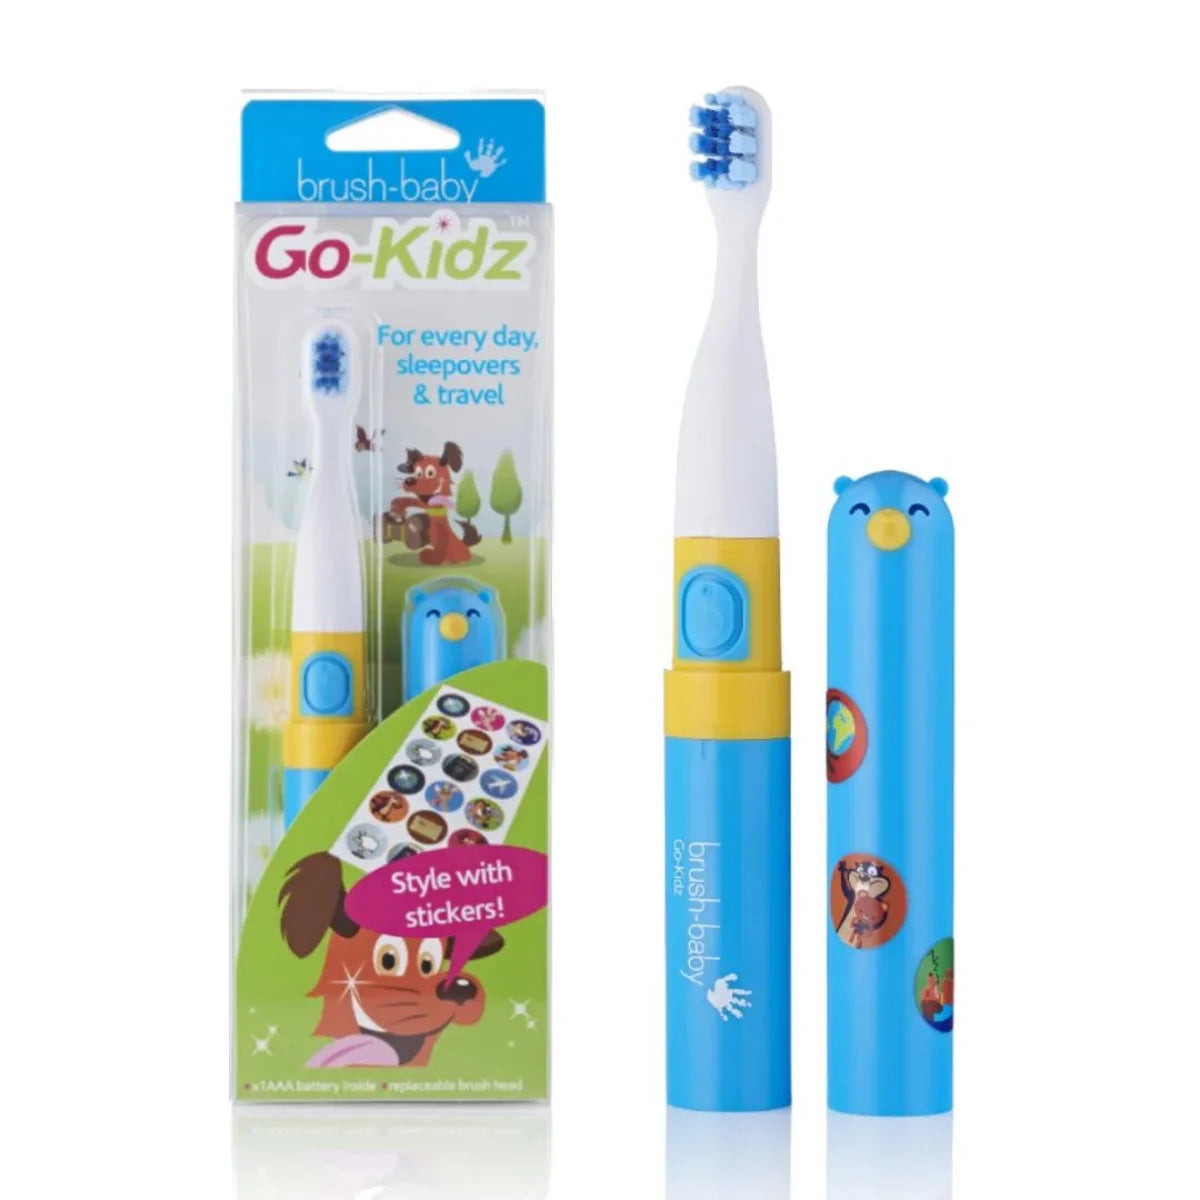 BrushBaby Go-Kidz travel Kids Electric Toothbrush